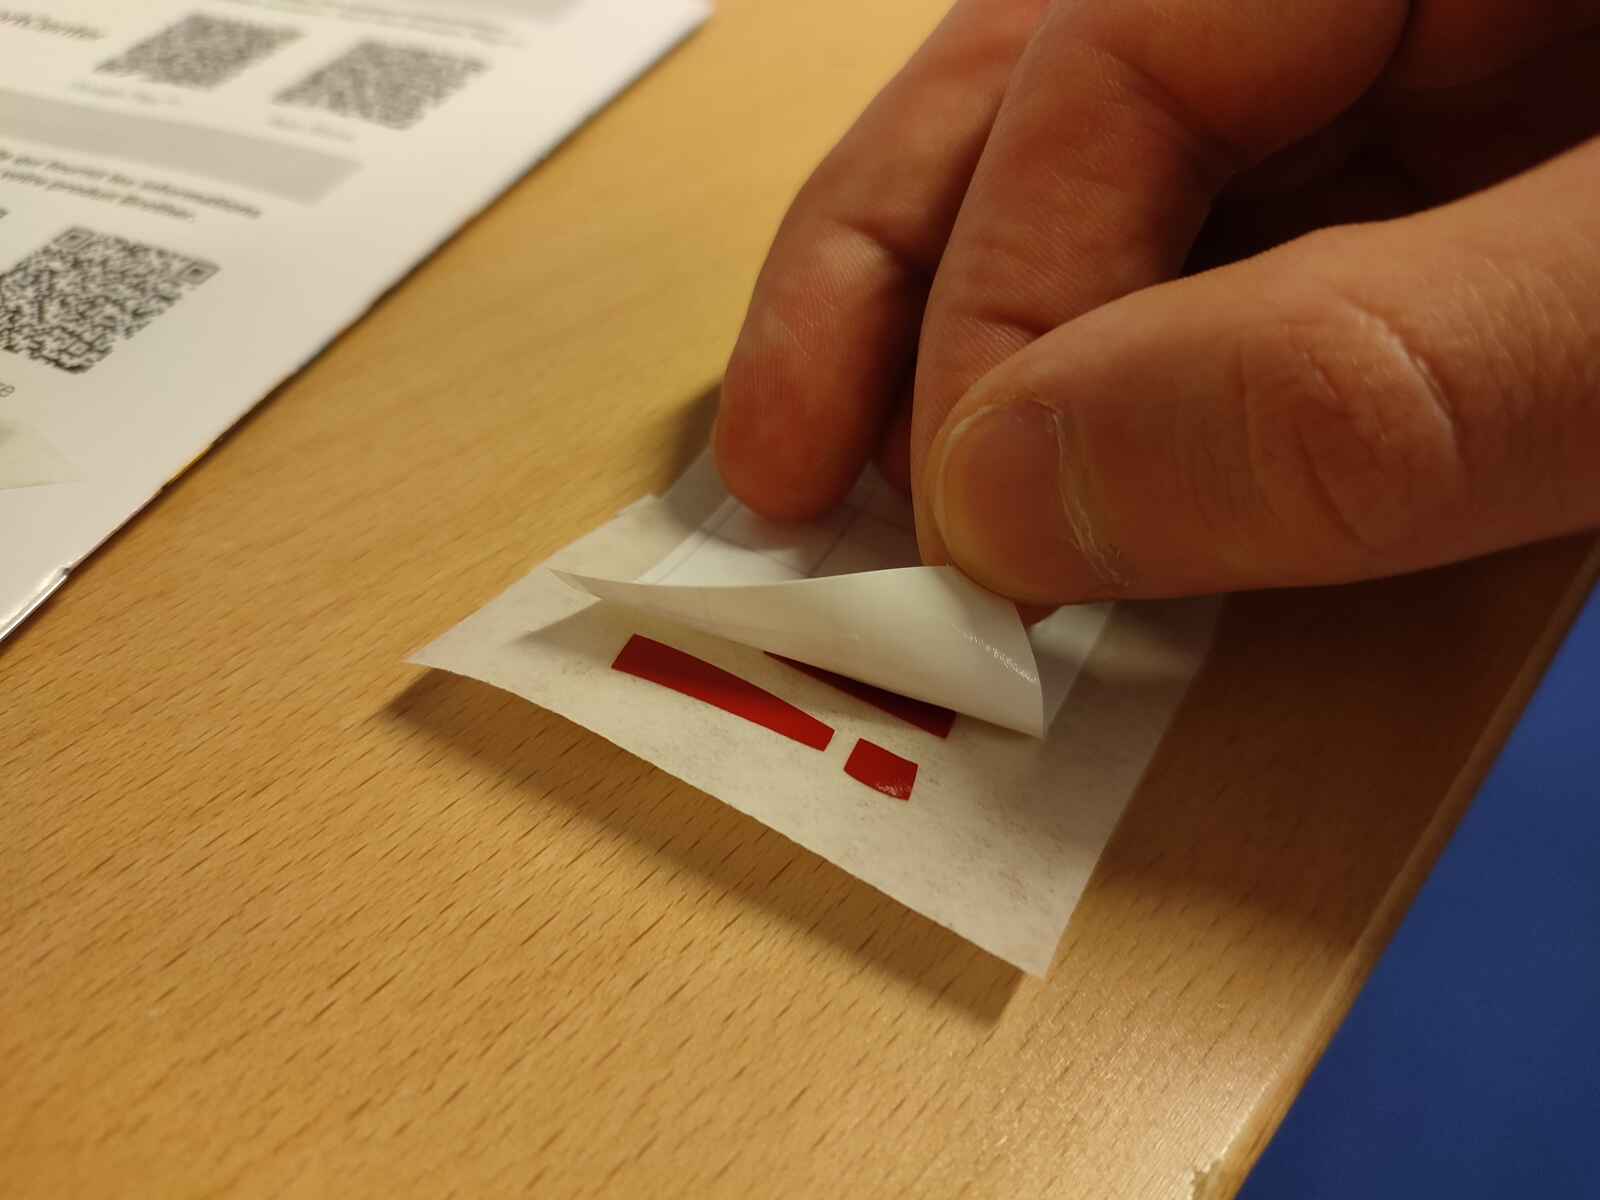 peeling off adhesive tape